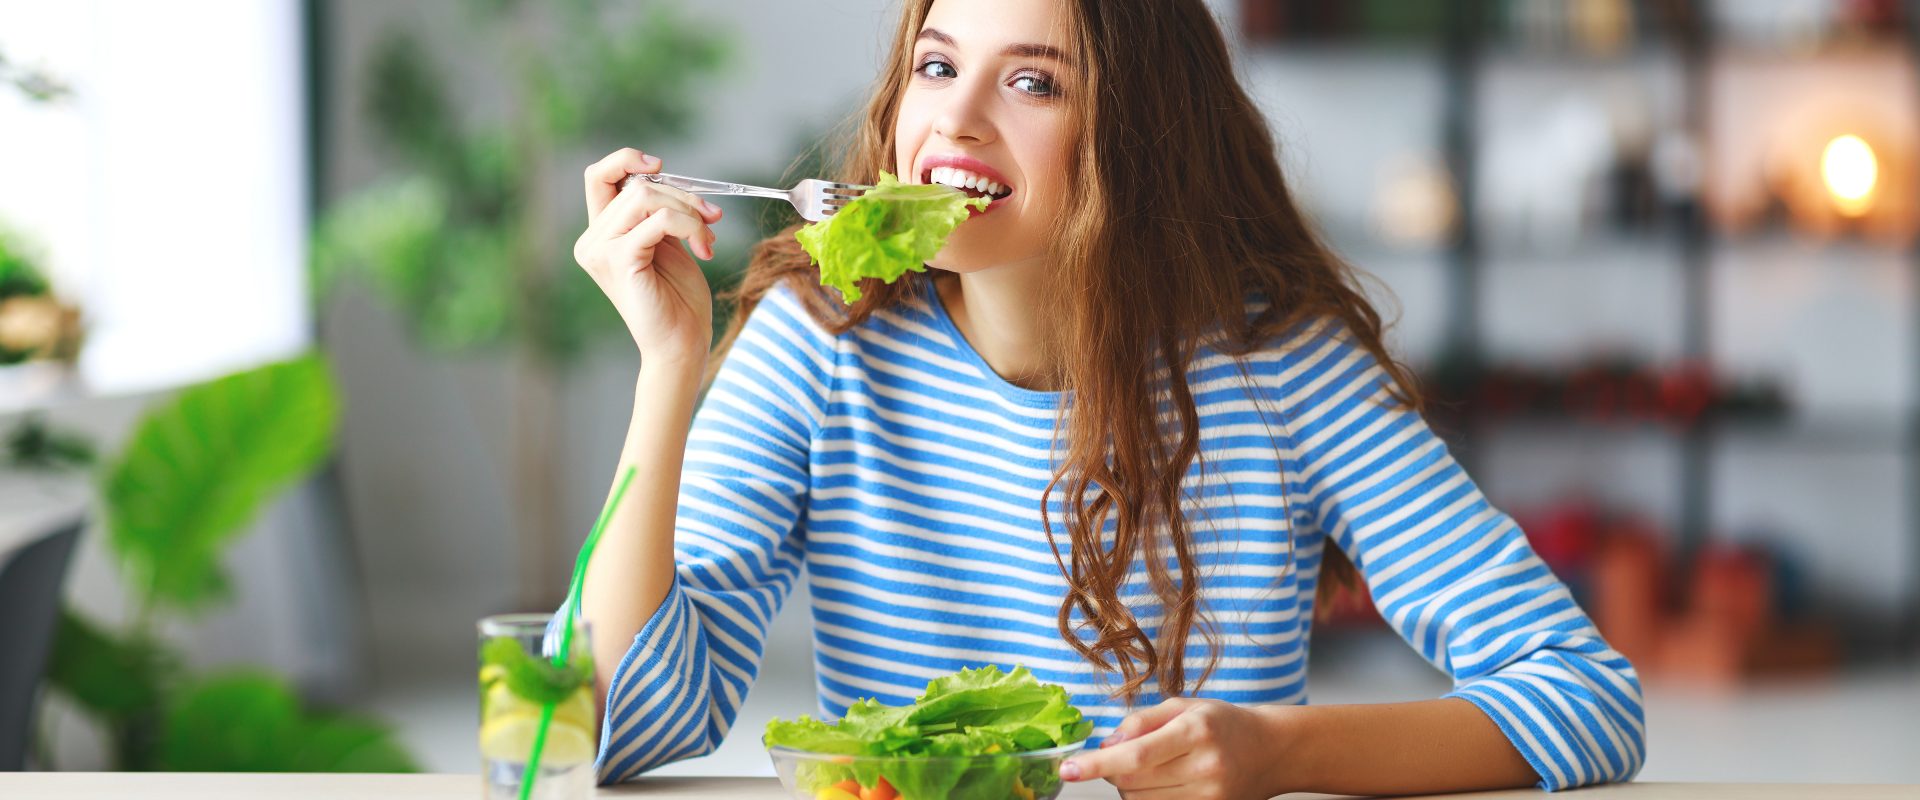 Dieta przy PCOS - co jeść, gdy cierpimy na zespół policystycznych jajników? Młoda kobieta w bluzce w biało-niebieskie paski je sałatkę, siedząc przy stole kuchennym.